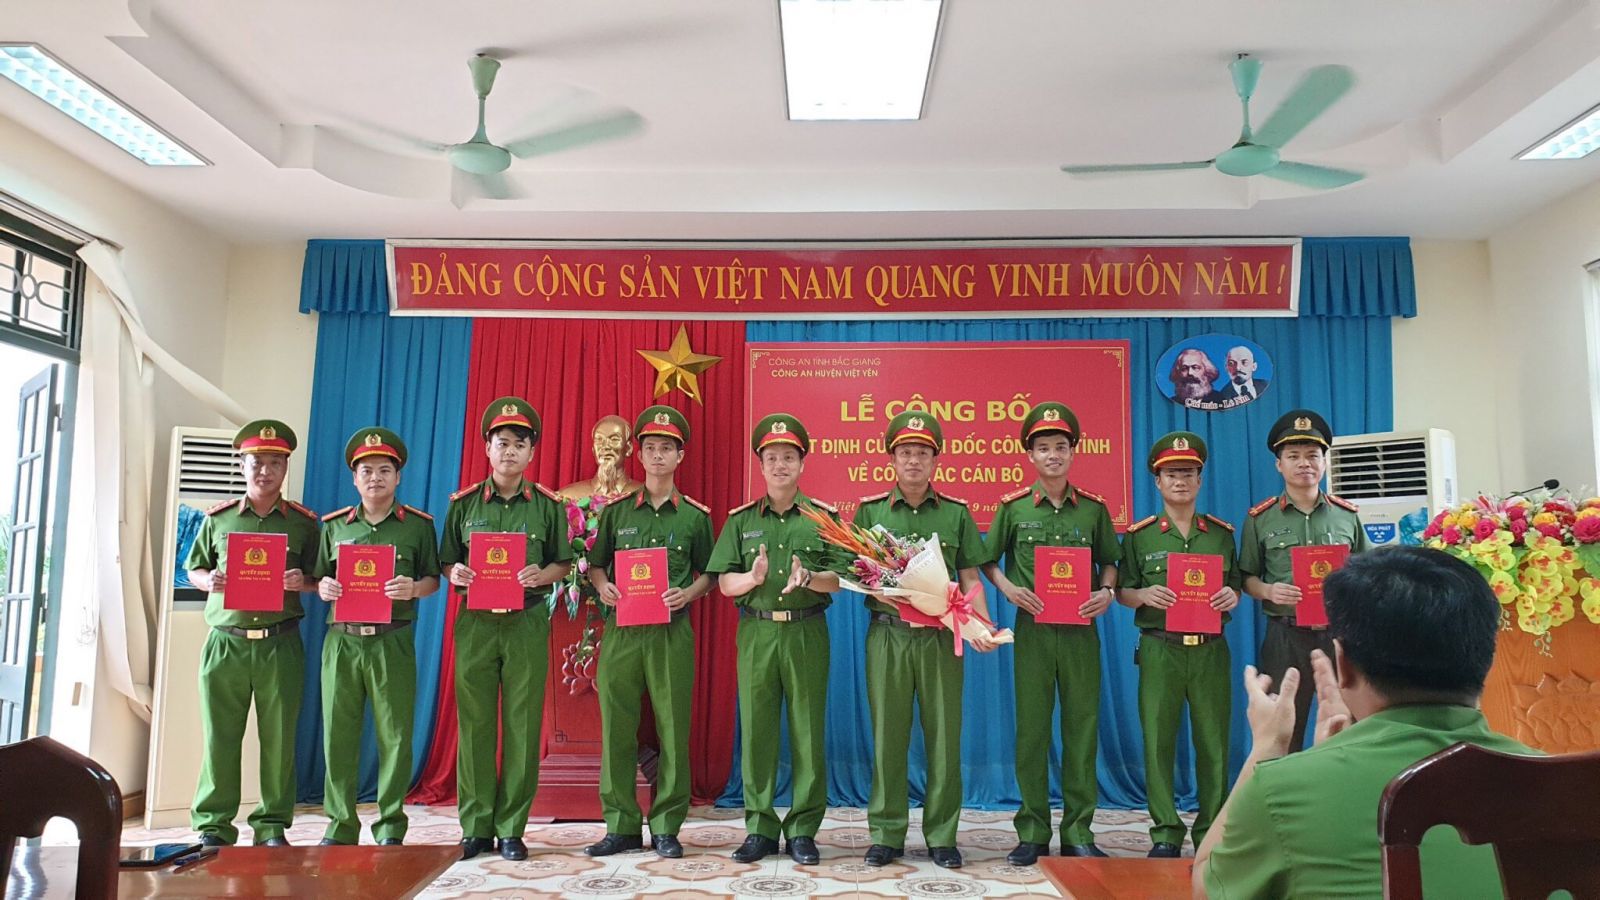 Đồng chí Thượng tá Nguyễn Hồng Sơn- Trưởng Công an huyện thừa ủy quyền của Giám đốc Công an tỉnh trao quyết định cho các đồng chí